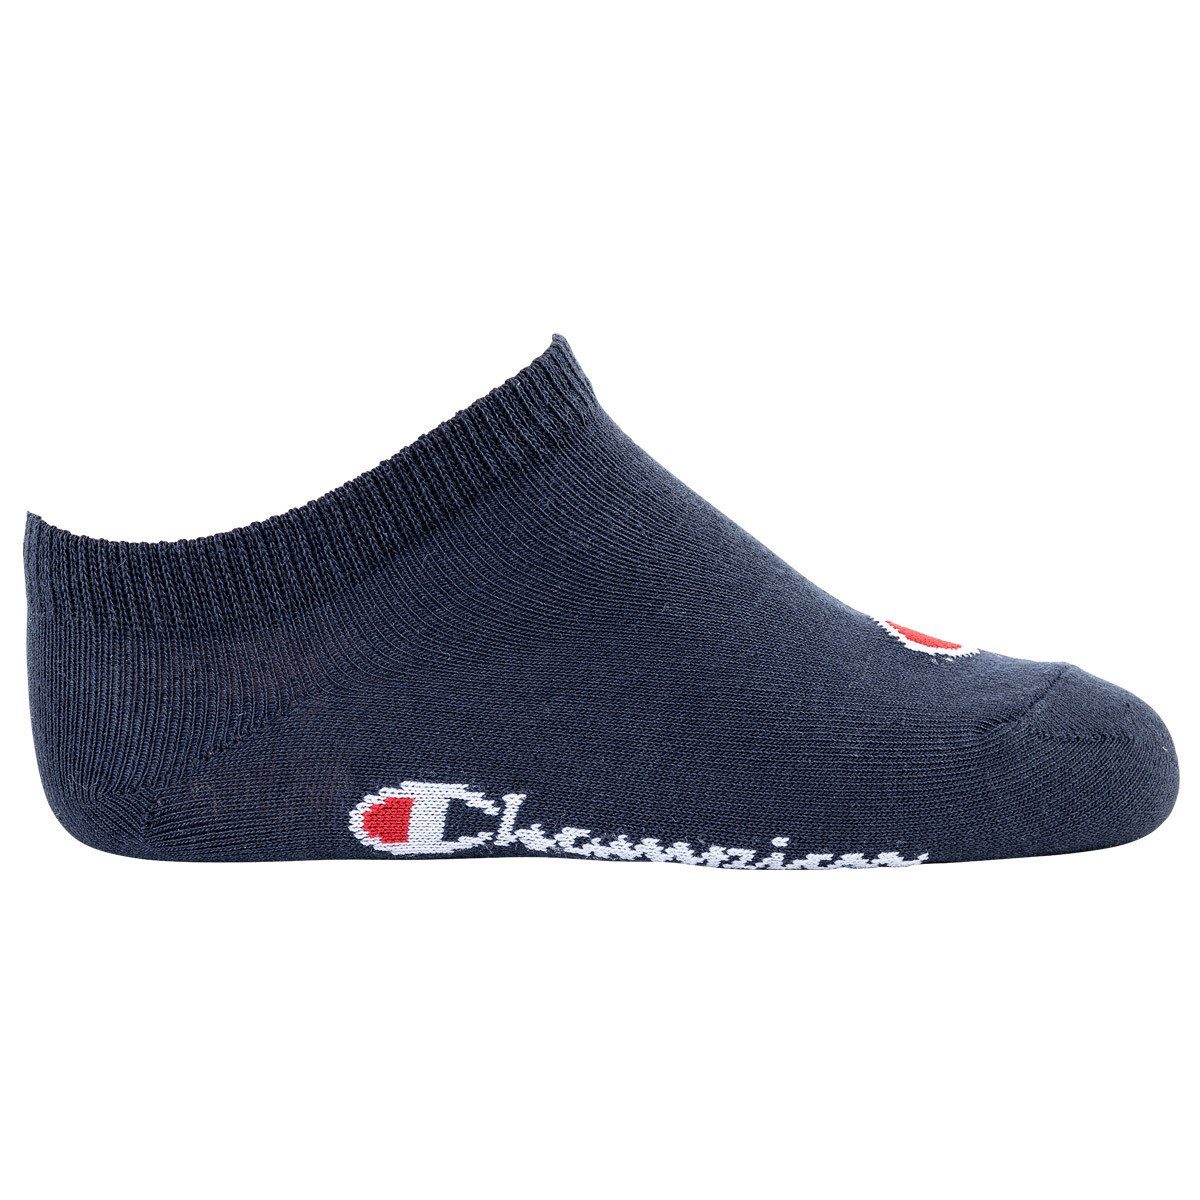 3er Kinder Pack- Socken, Champion Blau/Weiß/Grau einfarbig Sneaker, Freizeitsocken